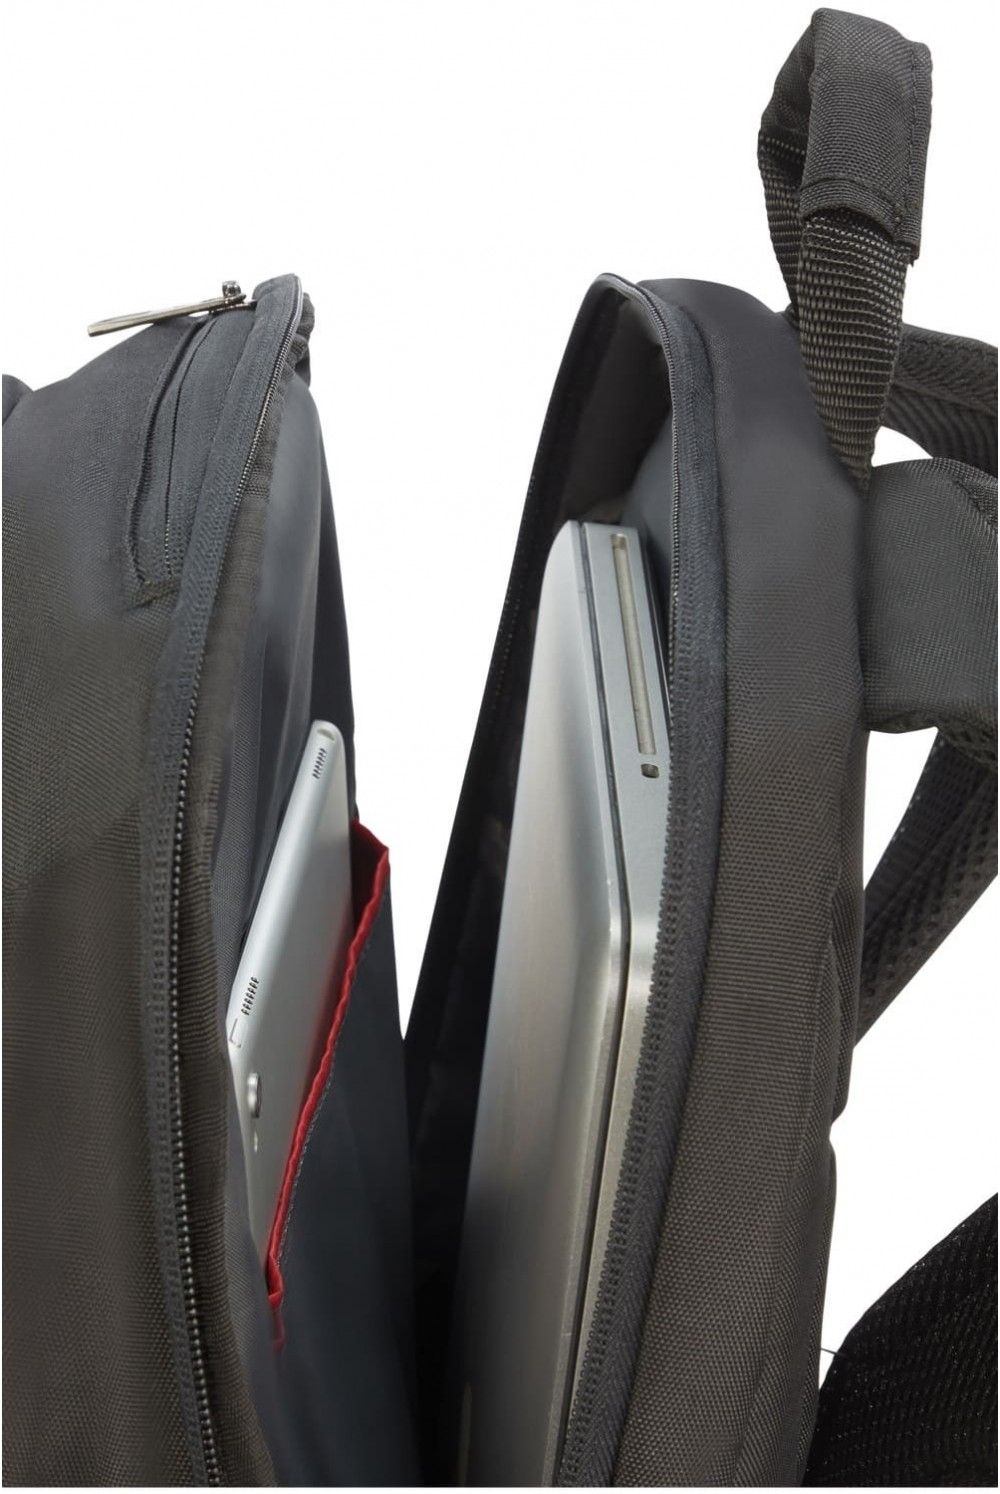 Backpack Laptop Guardit inches 2 Samsonite 14.1